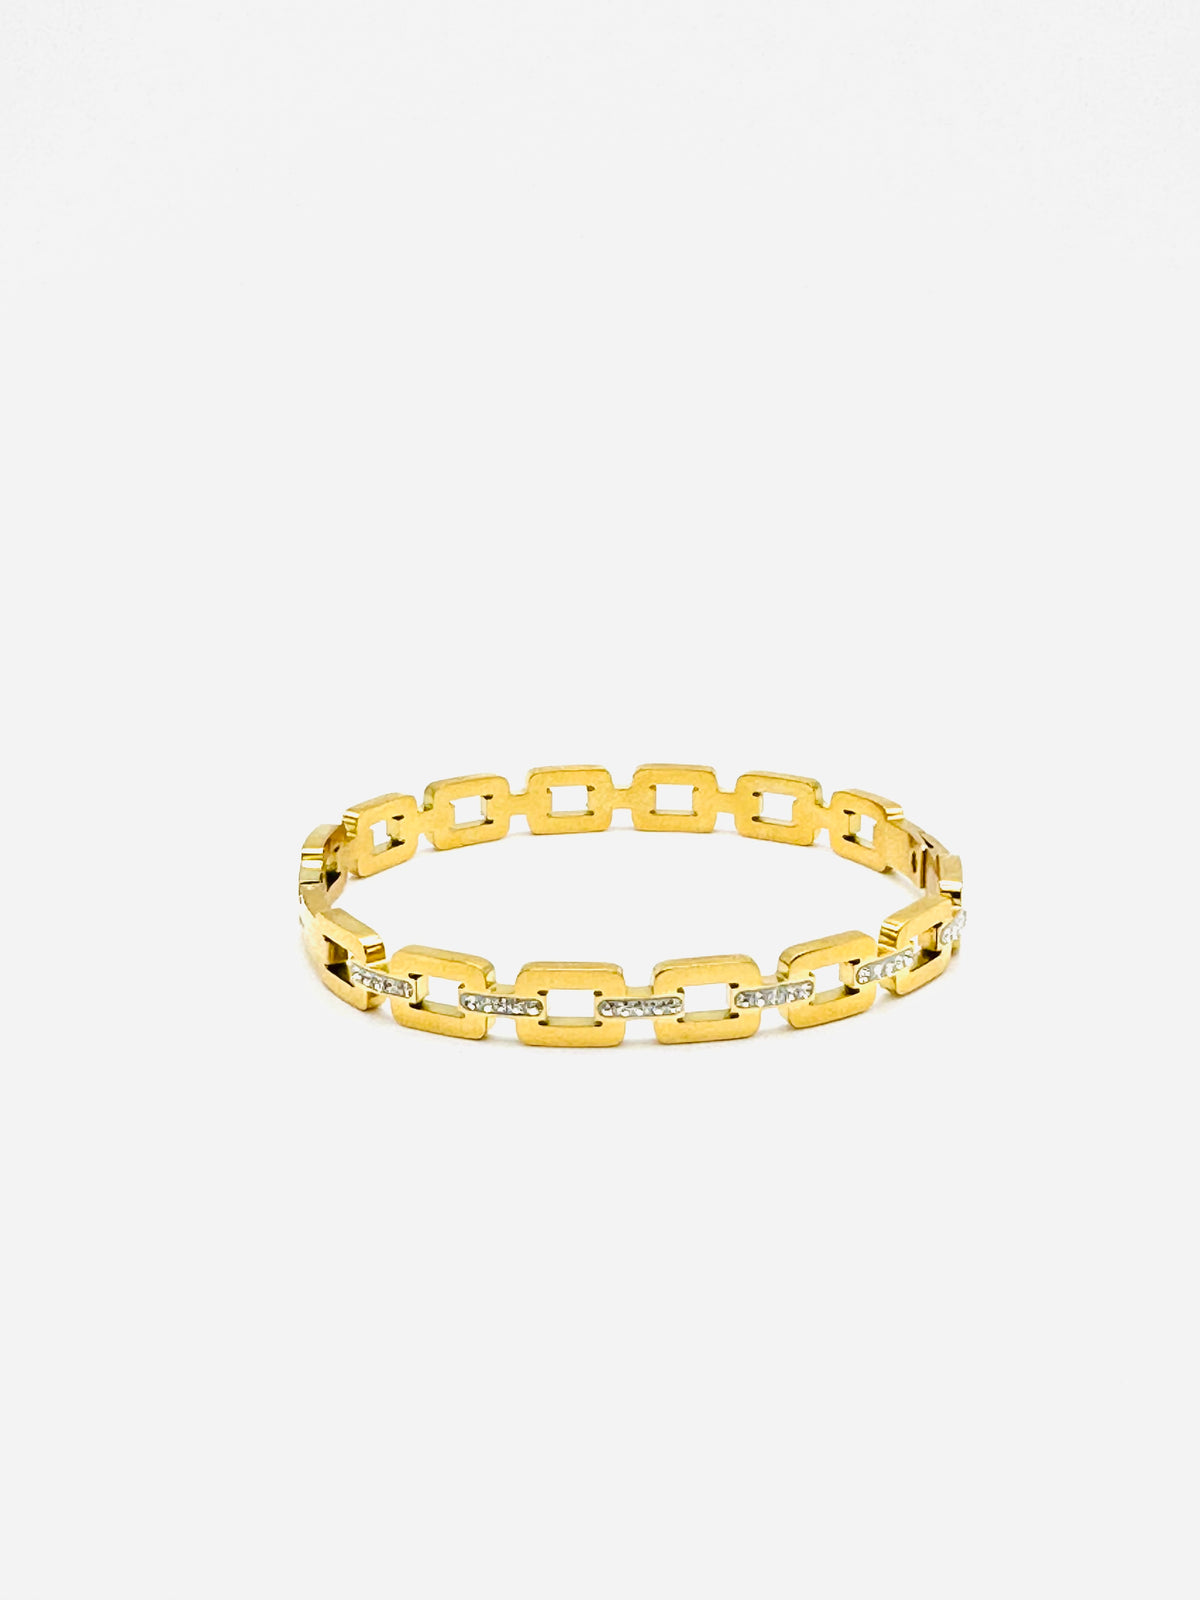 Golden Links Bangle Bracelet